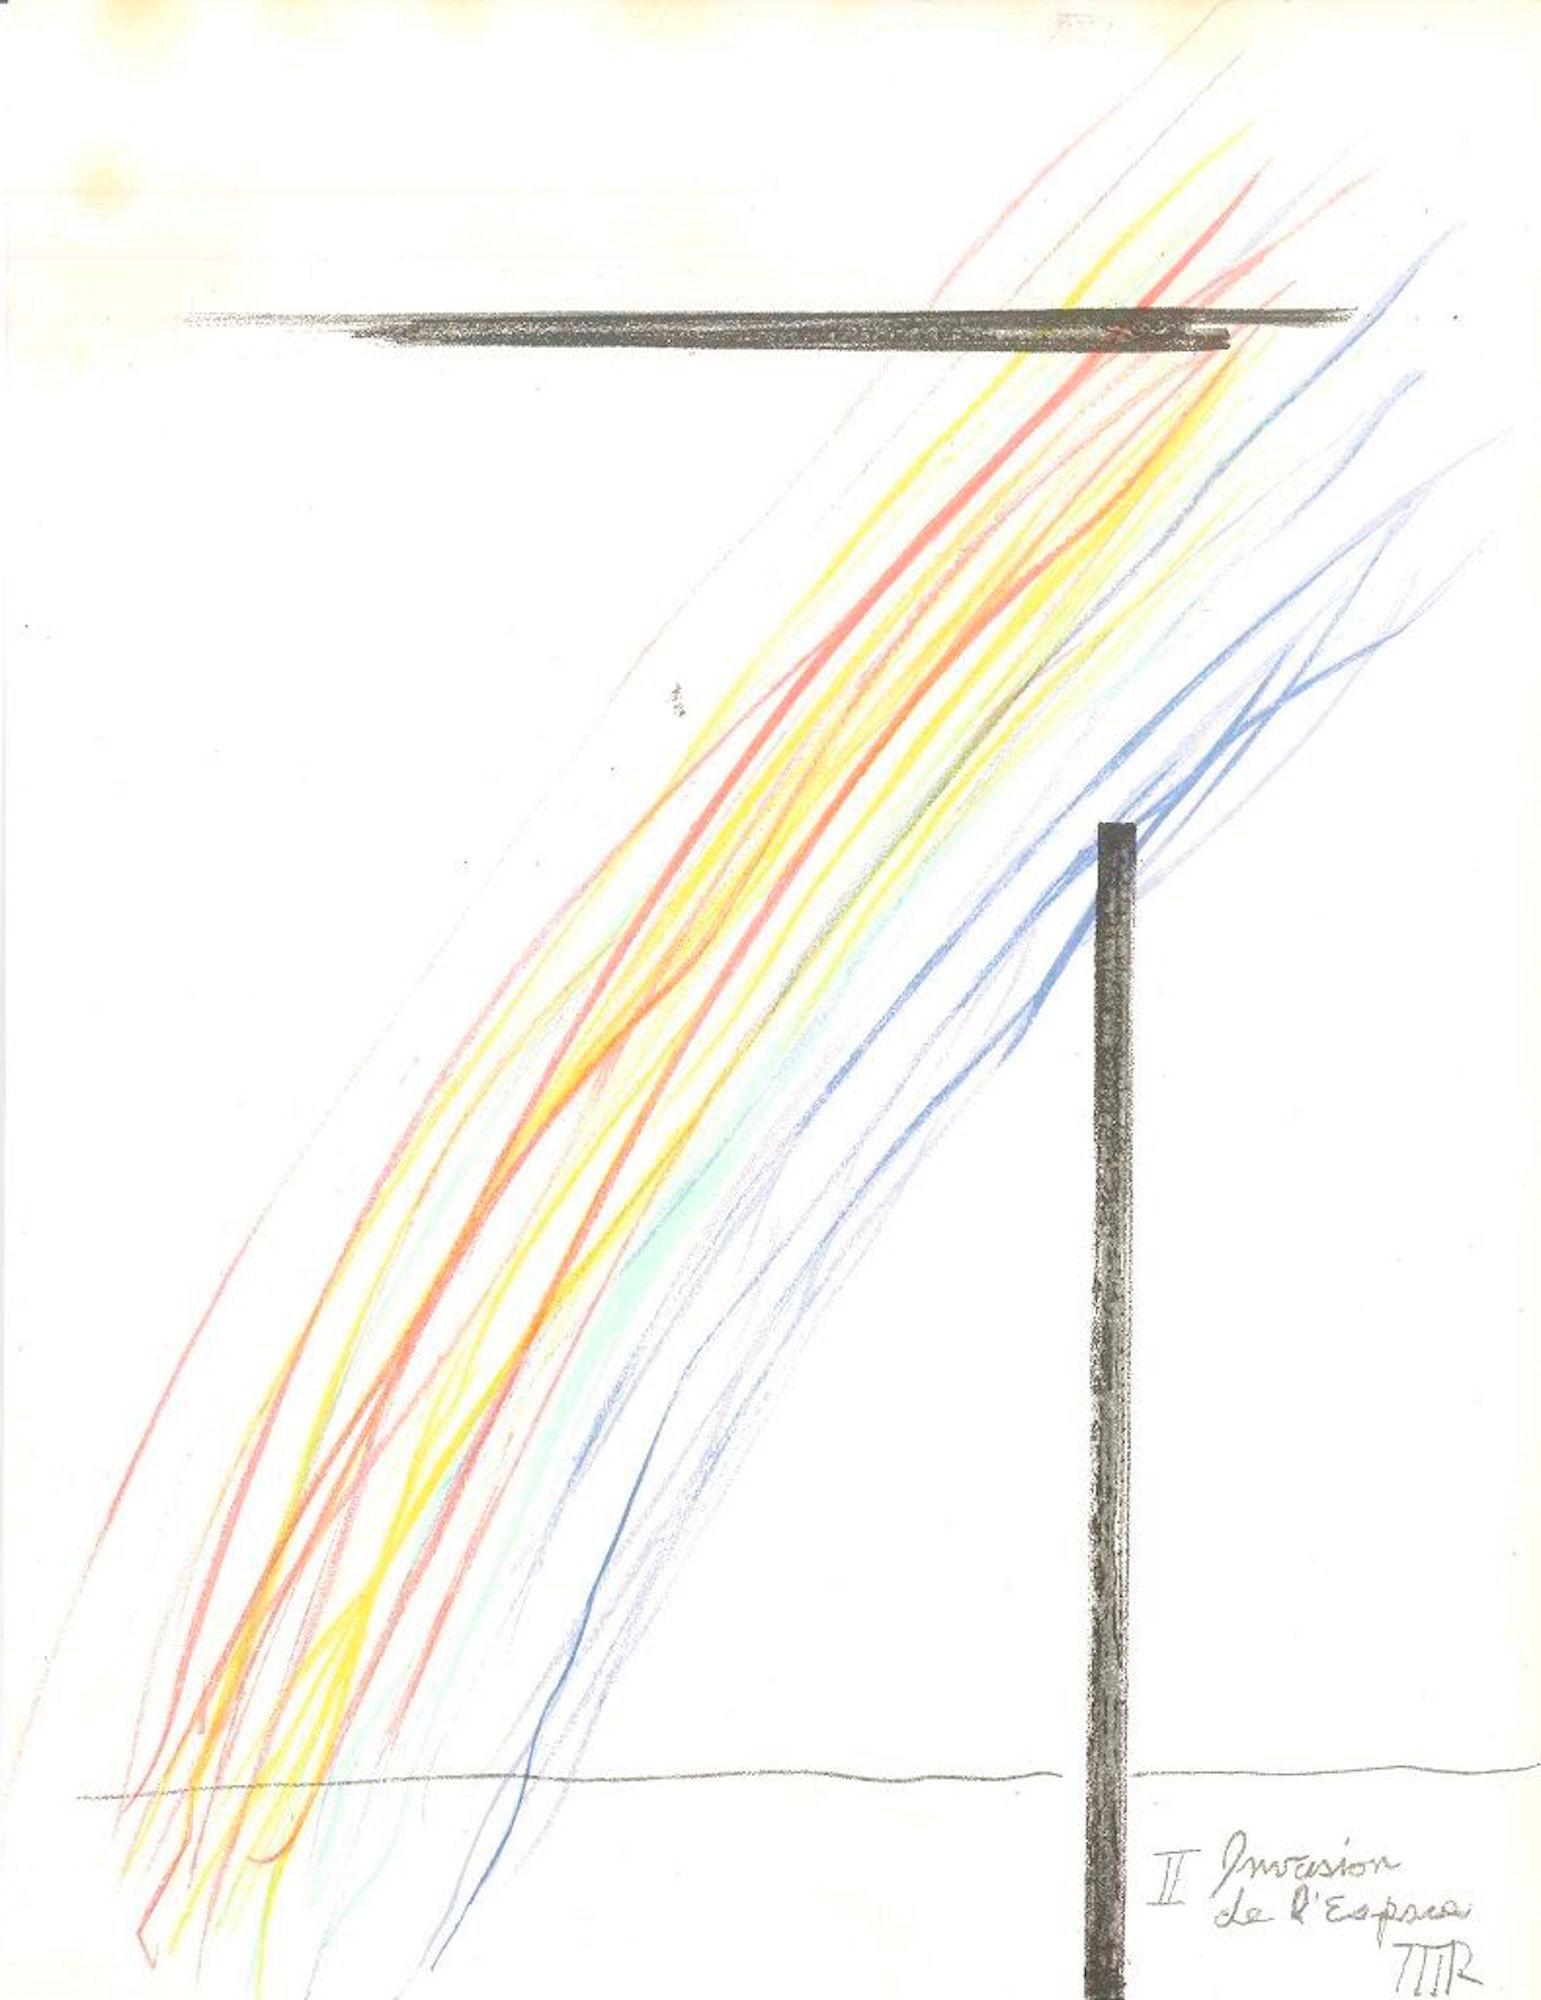 Invasion de l'espace est une estampe originale de l'artiste américain et représentant du dadaïsme Man Ray (Philadelphie 1890 - Paris 1976).

Cette lithographie en couleur sur papier a été éditée par la revue française "XXe Siécle", et publiée dans